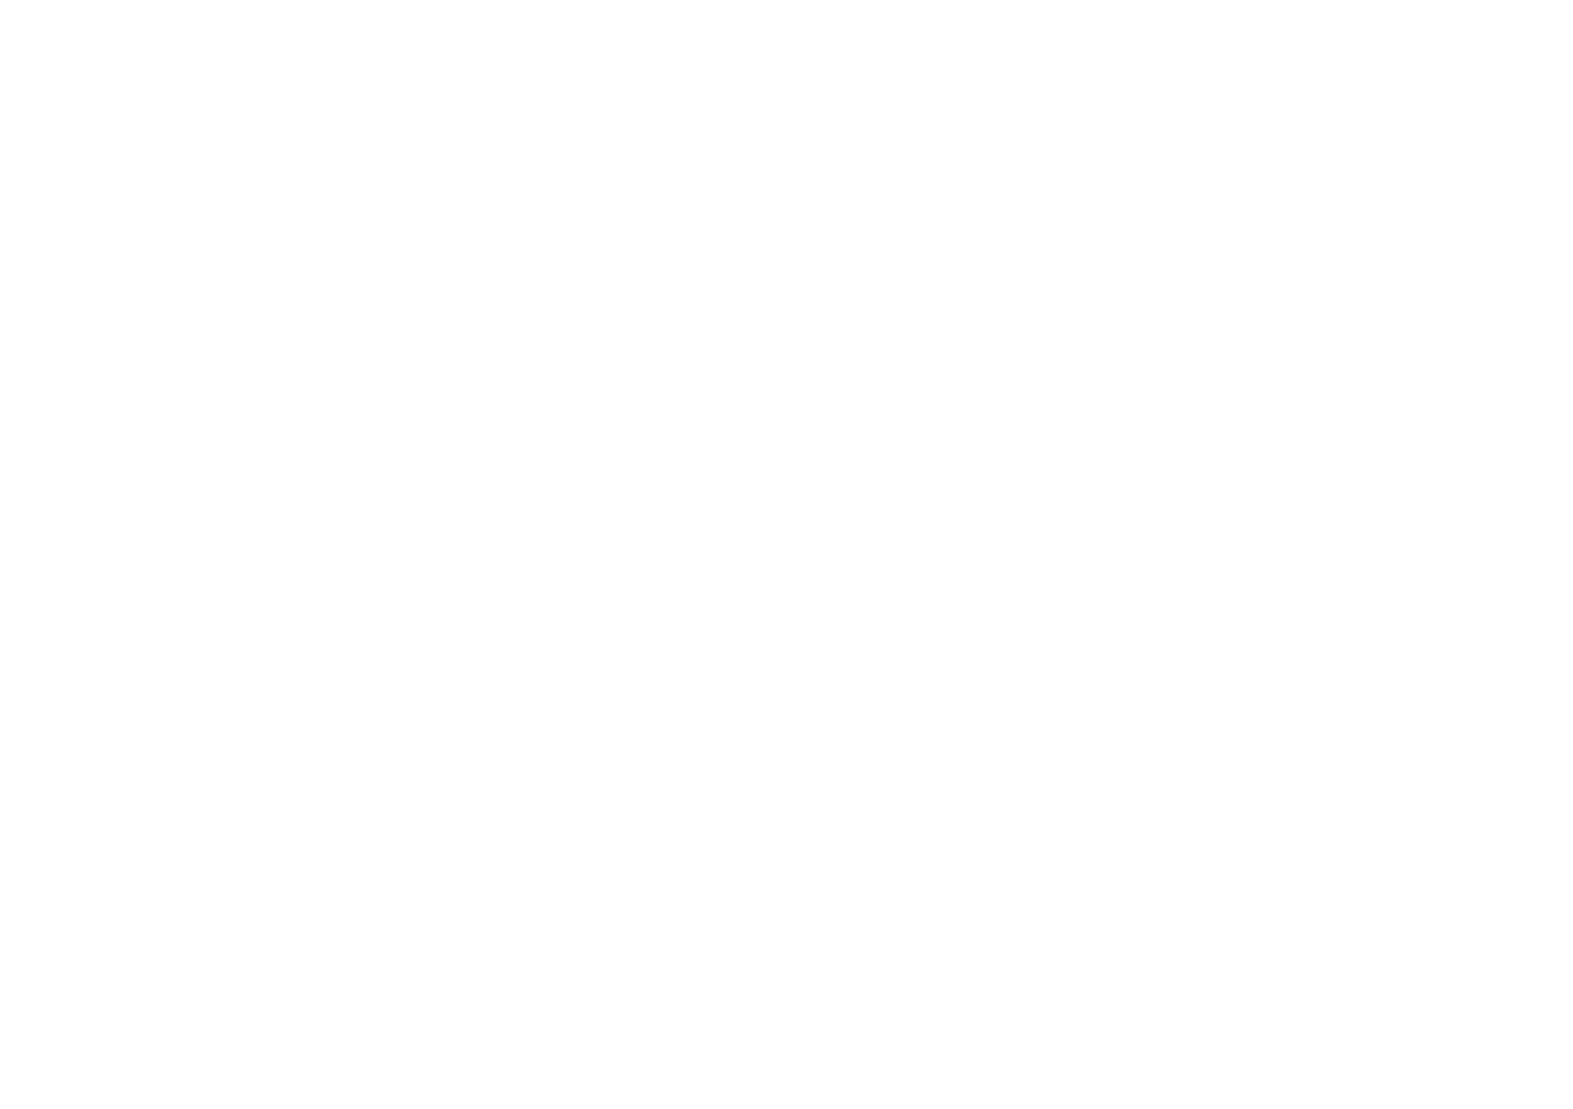 Whiteboard Explainer Videos